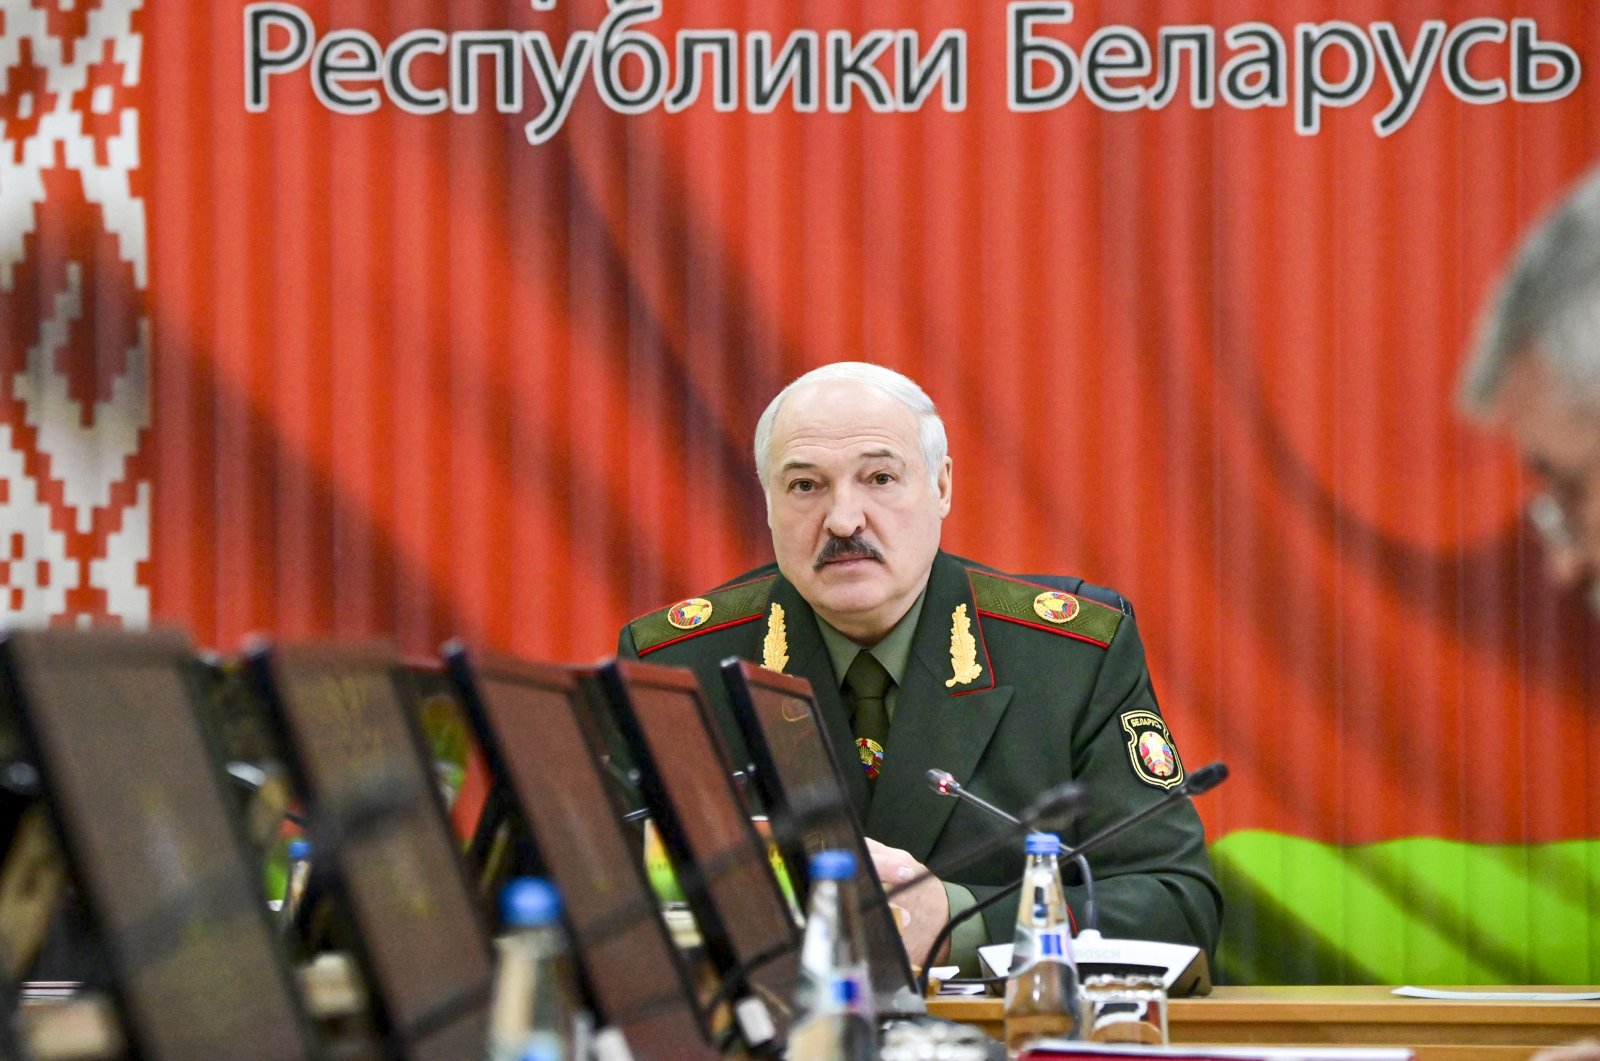 ES šalys susitarė išplėsti sankcijas Baltarusijos taikiniams